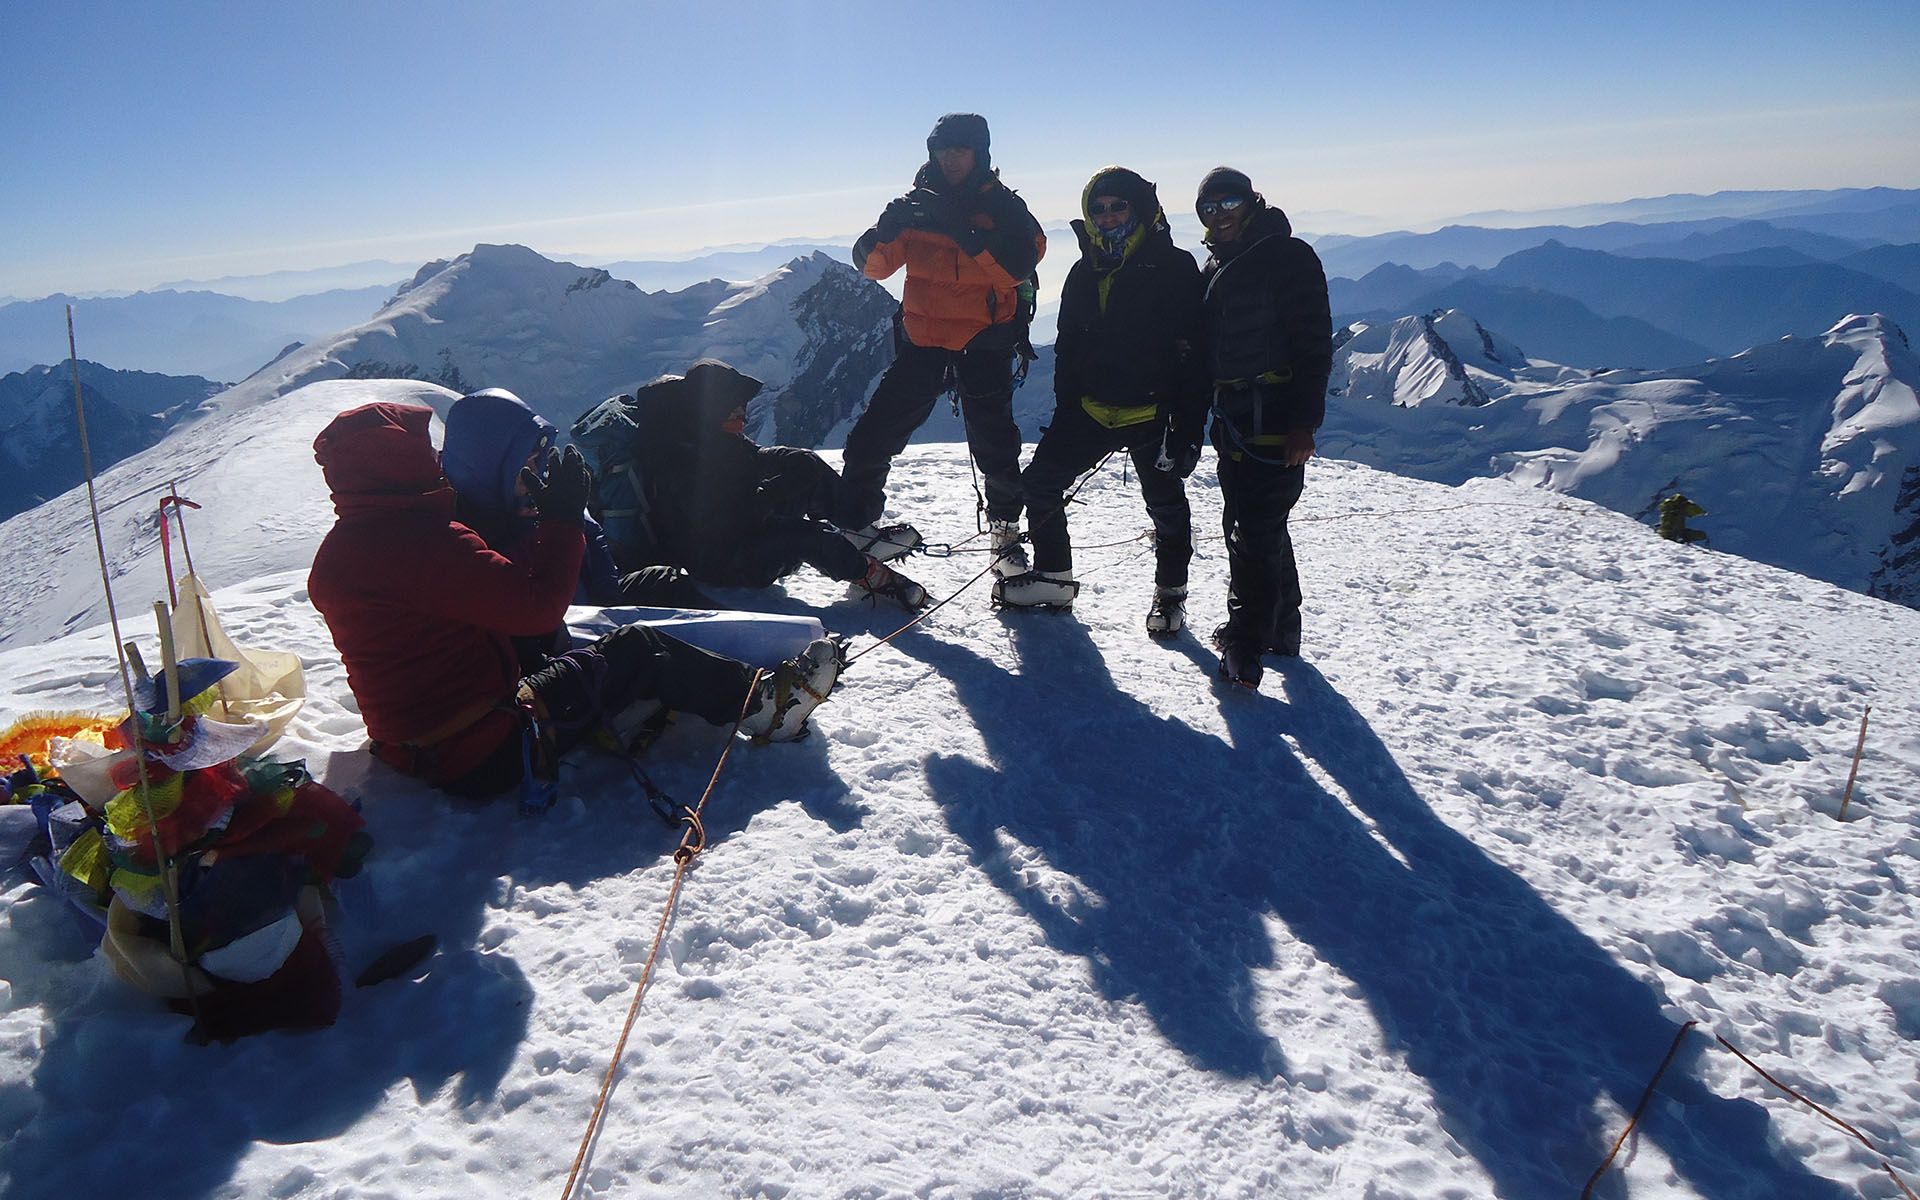 Mera Peak Summit 6476 meters. 